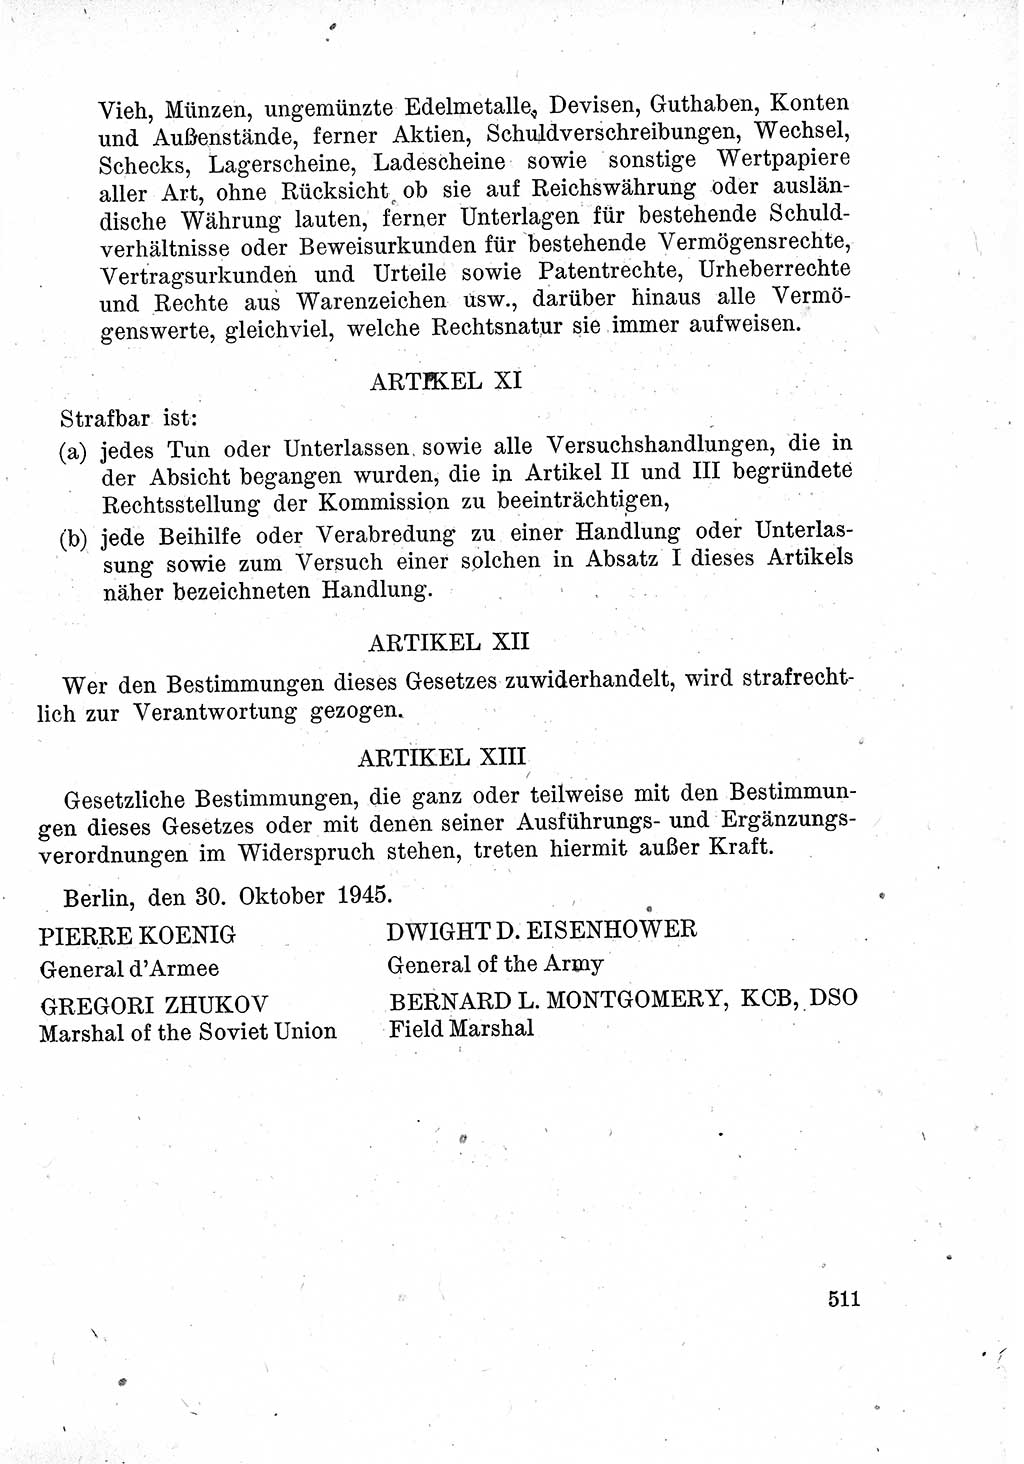 Das Recht der Besatzungsmacht (Deutschland), Proklamationen, Deklerationen, Verordnungen, Gesetze und Bekanntmachungen 1947, Seite 511 (R. Bes. Dtl. 1947, S. 511)